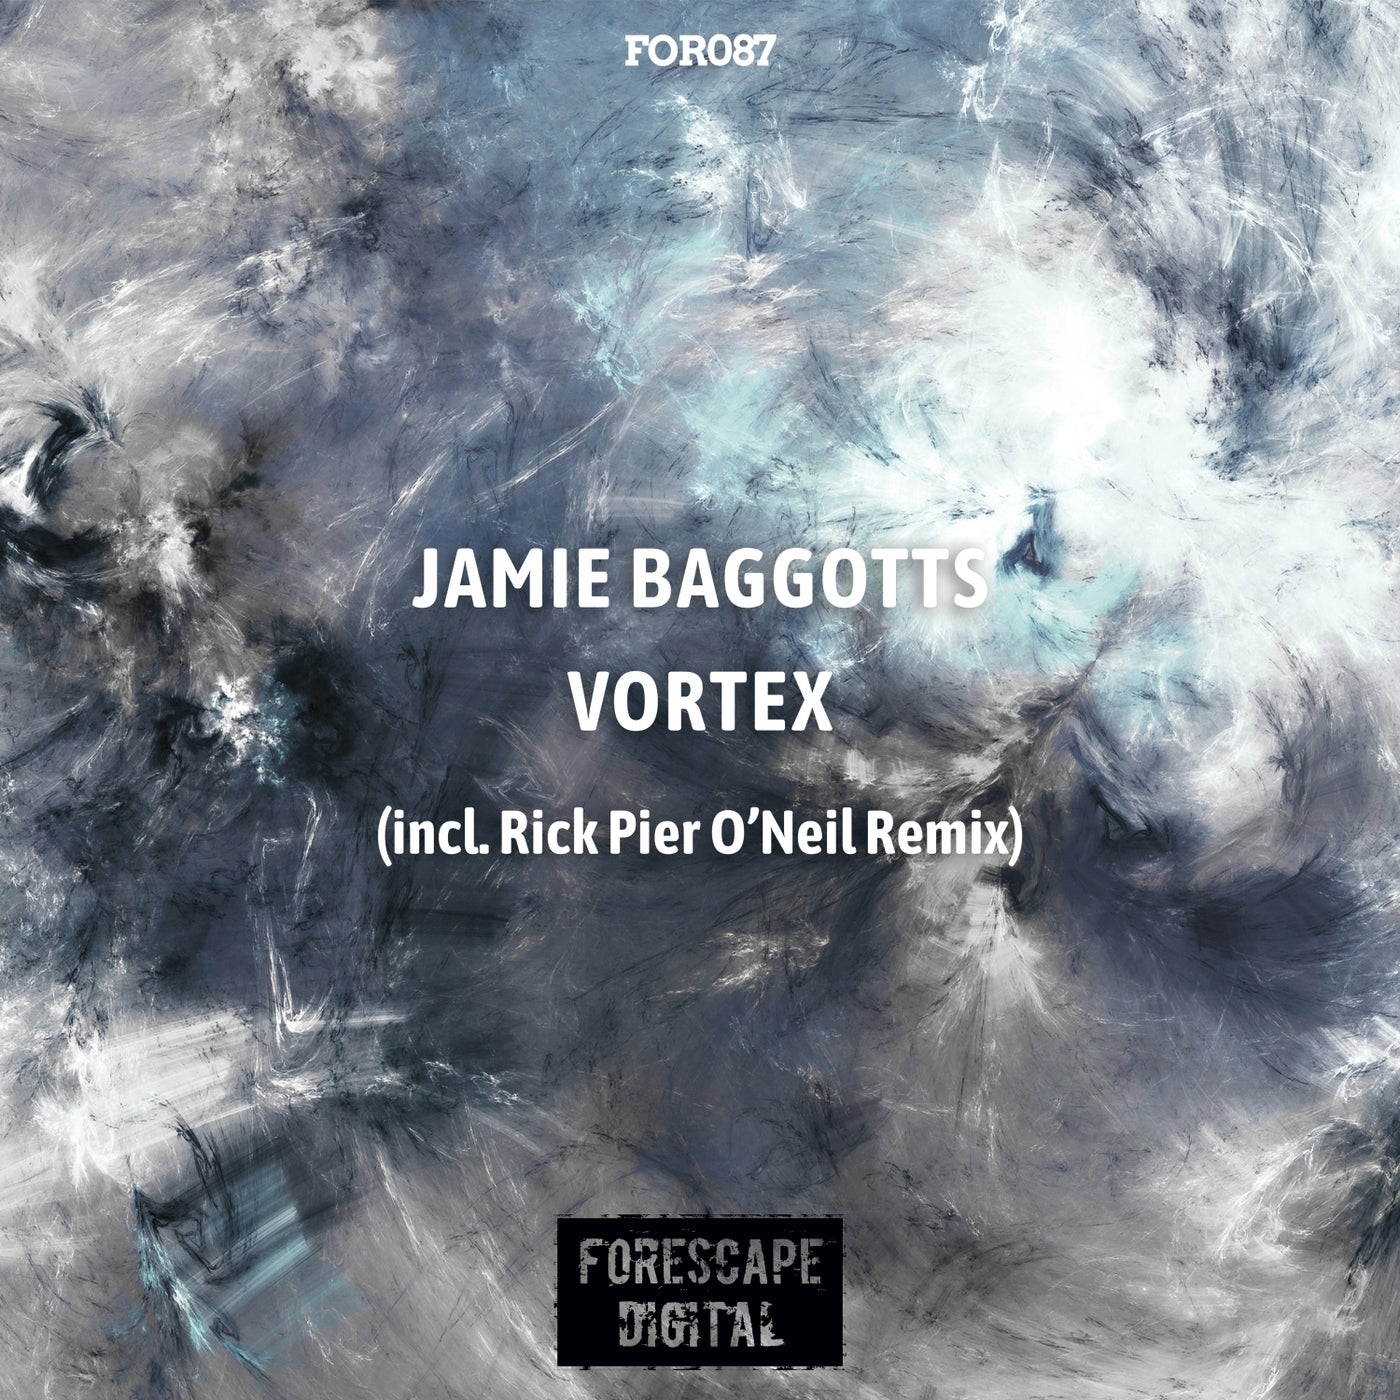 Jamie Baggotts - Vortex [FOR087]